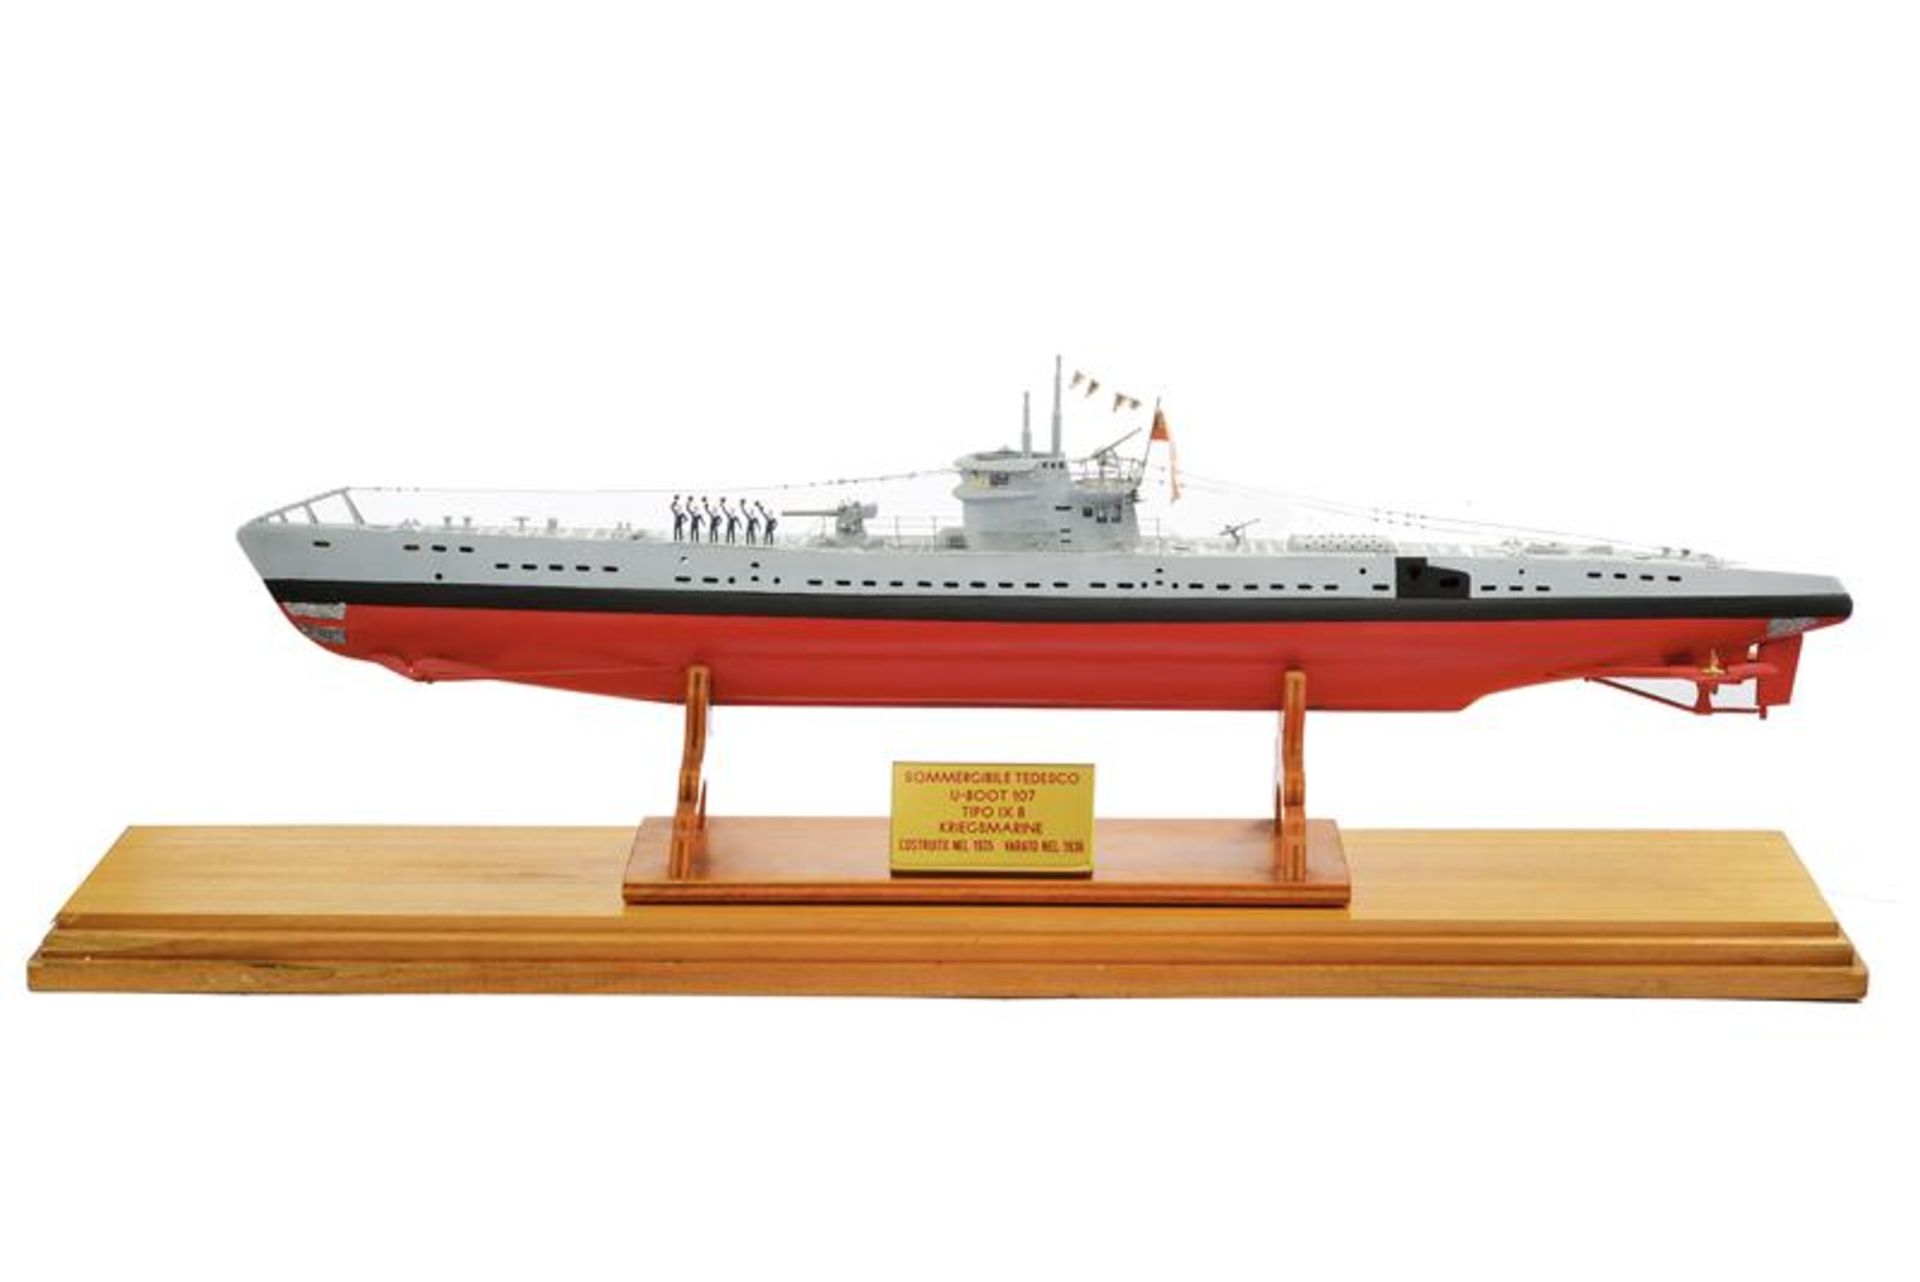 A U-boot model